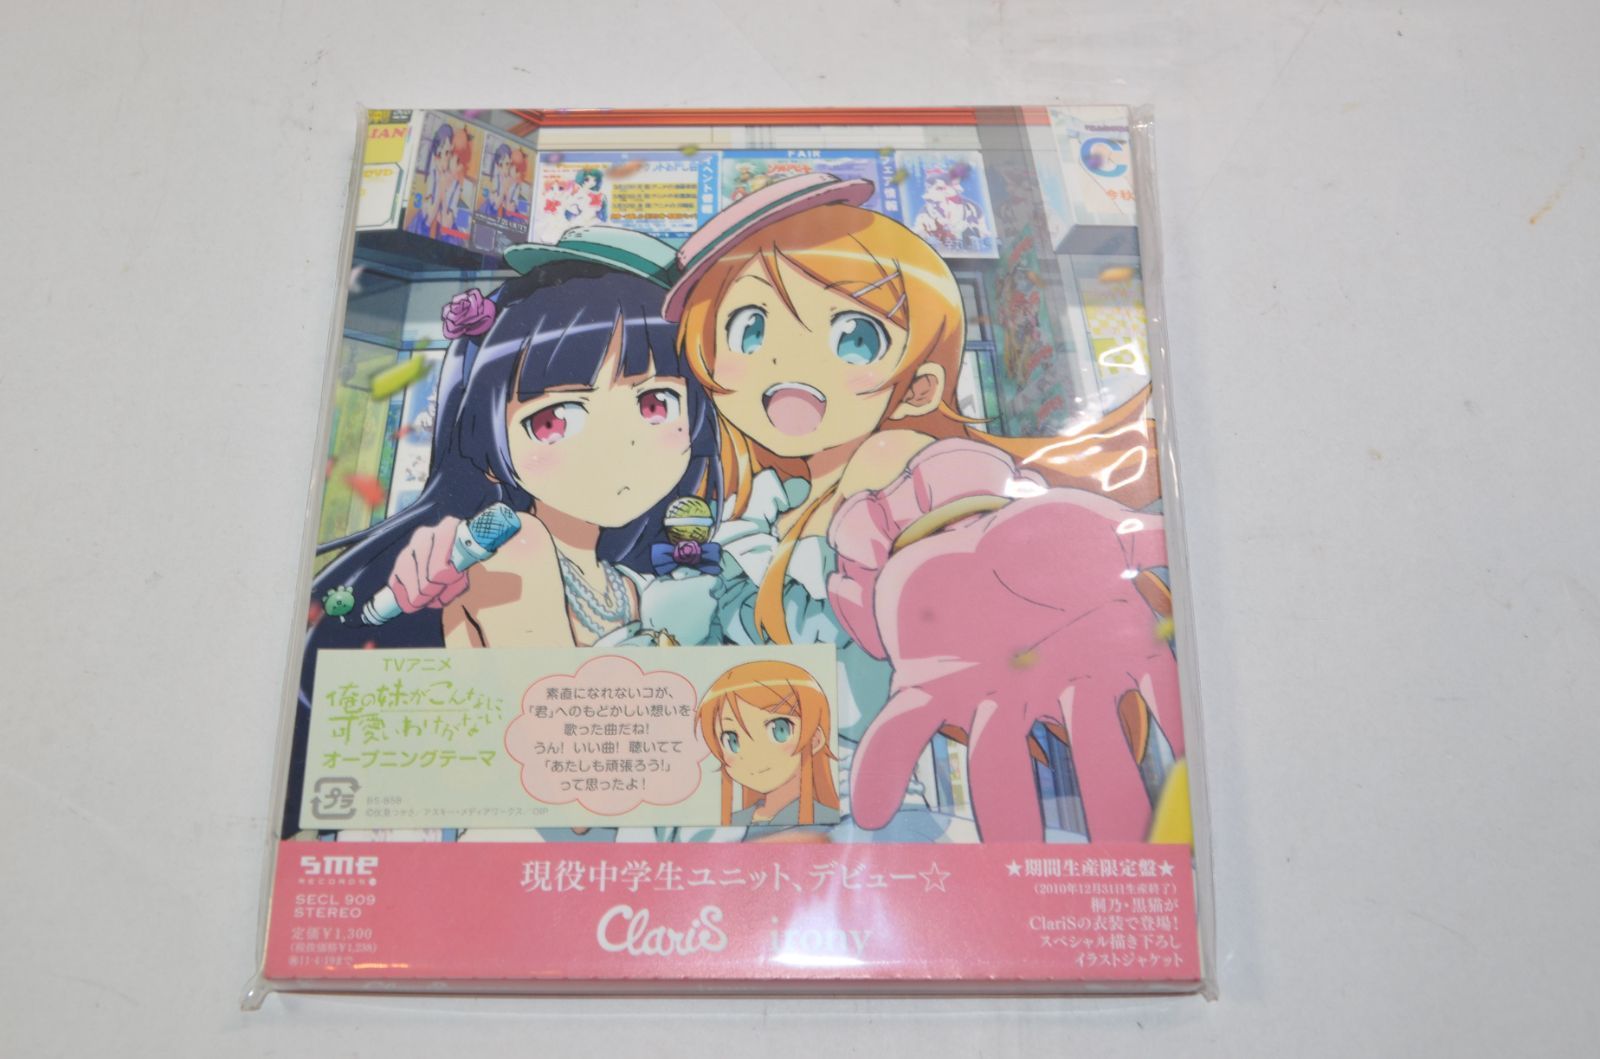 公式通販にて購入 ClariSアニメ盤 期間生産限定盤セット - CD